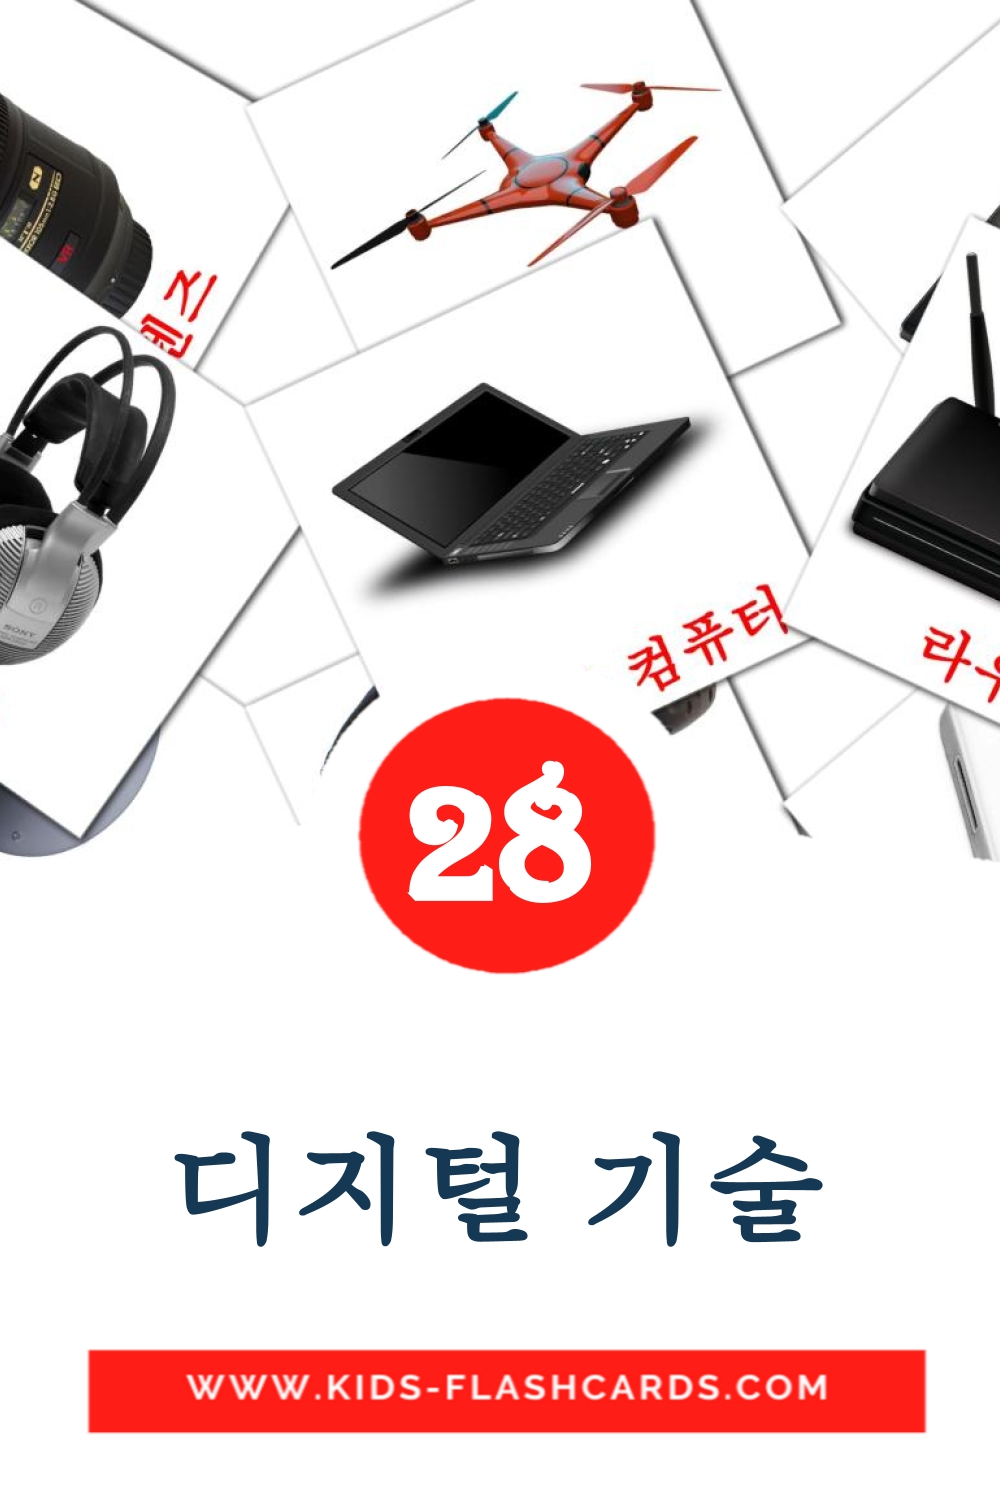 28 디지털 기술 fotokaarten voor kleuters in het koreaanse